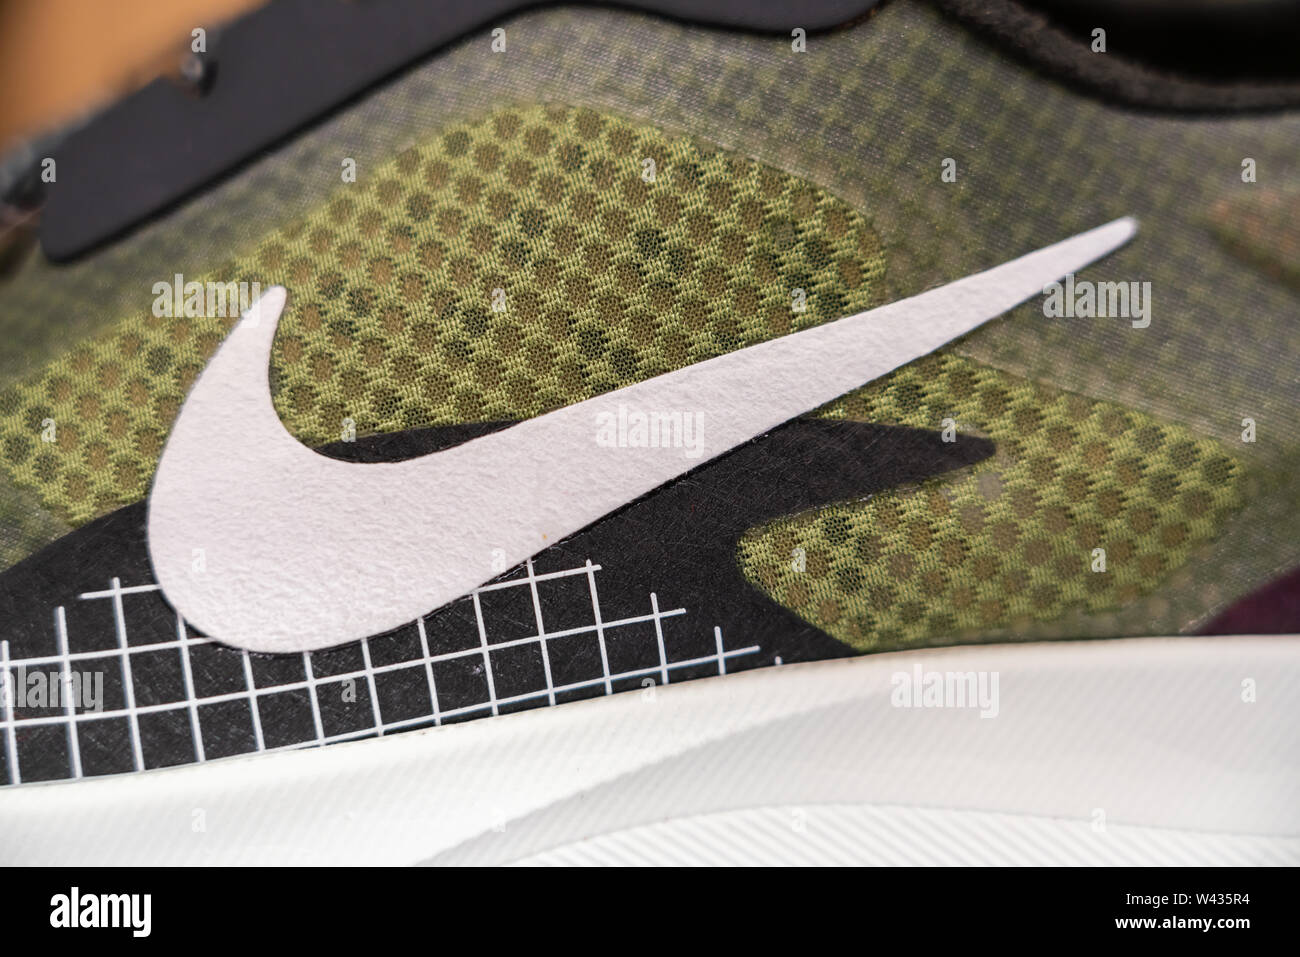 Fabricant de vêtements de multinationale américaine logo Nike vu sur une  chaussure Photo Stock - Alamy